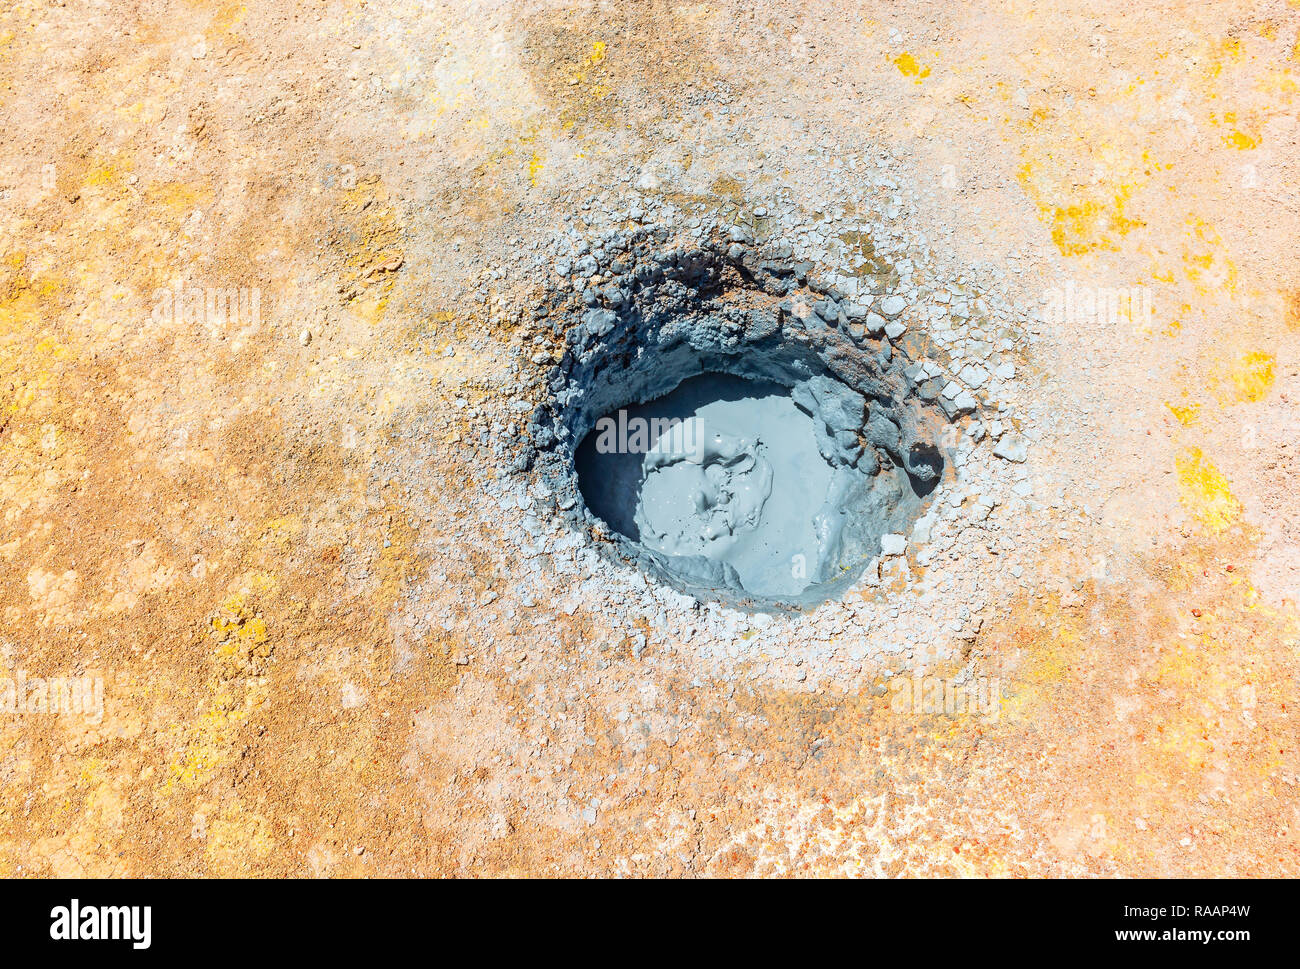 Une boue dans l'actif volcanique hot spot du sol de Mañana dans l'Altiplano de Bolivie situé entre le plateau de sel d'Uyuni et le désert d'Atacama. Banque D'Images